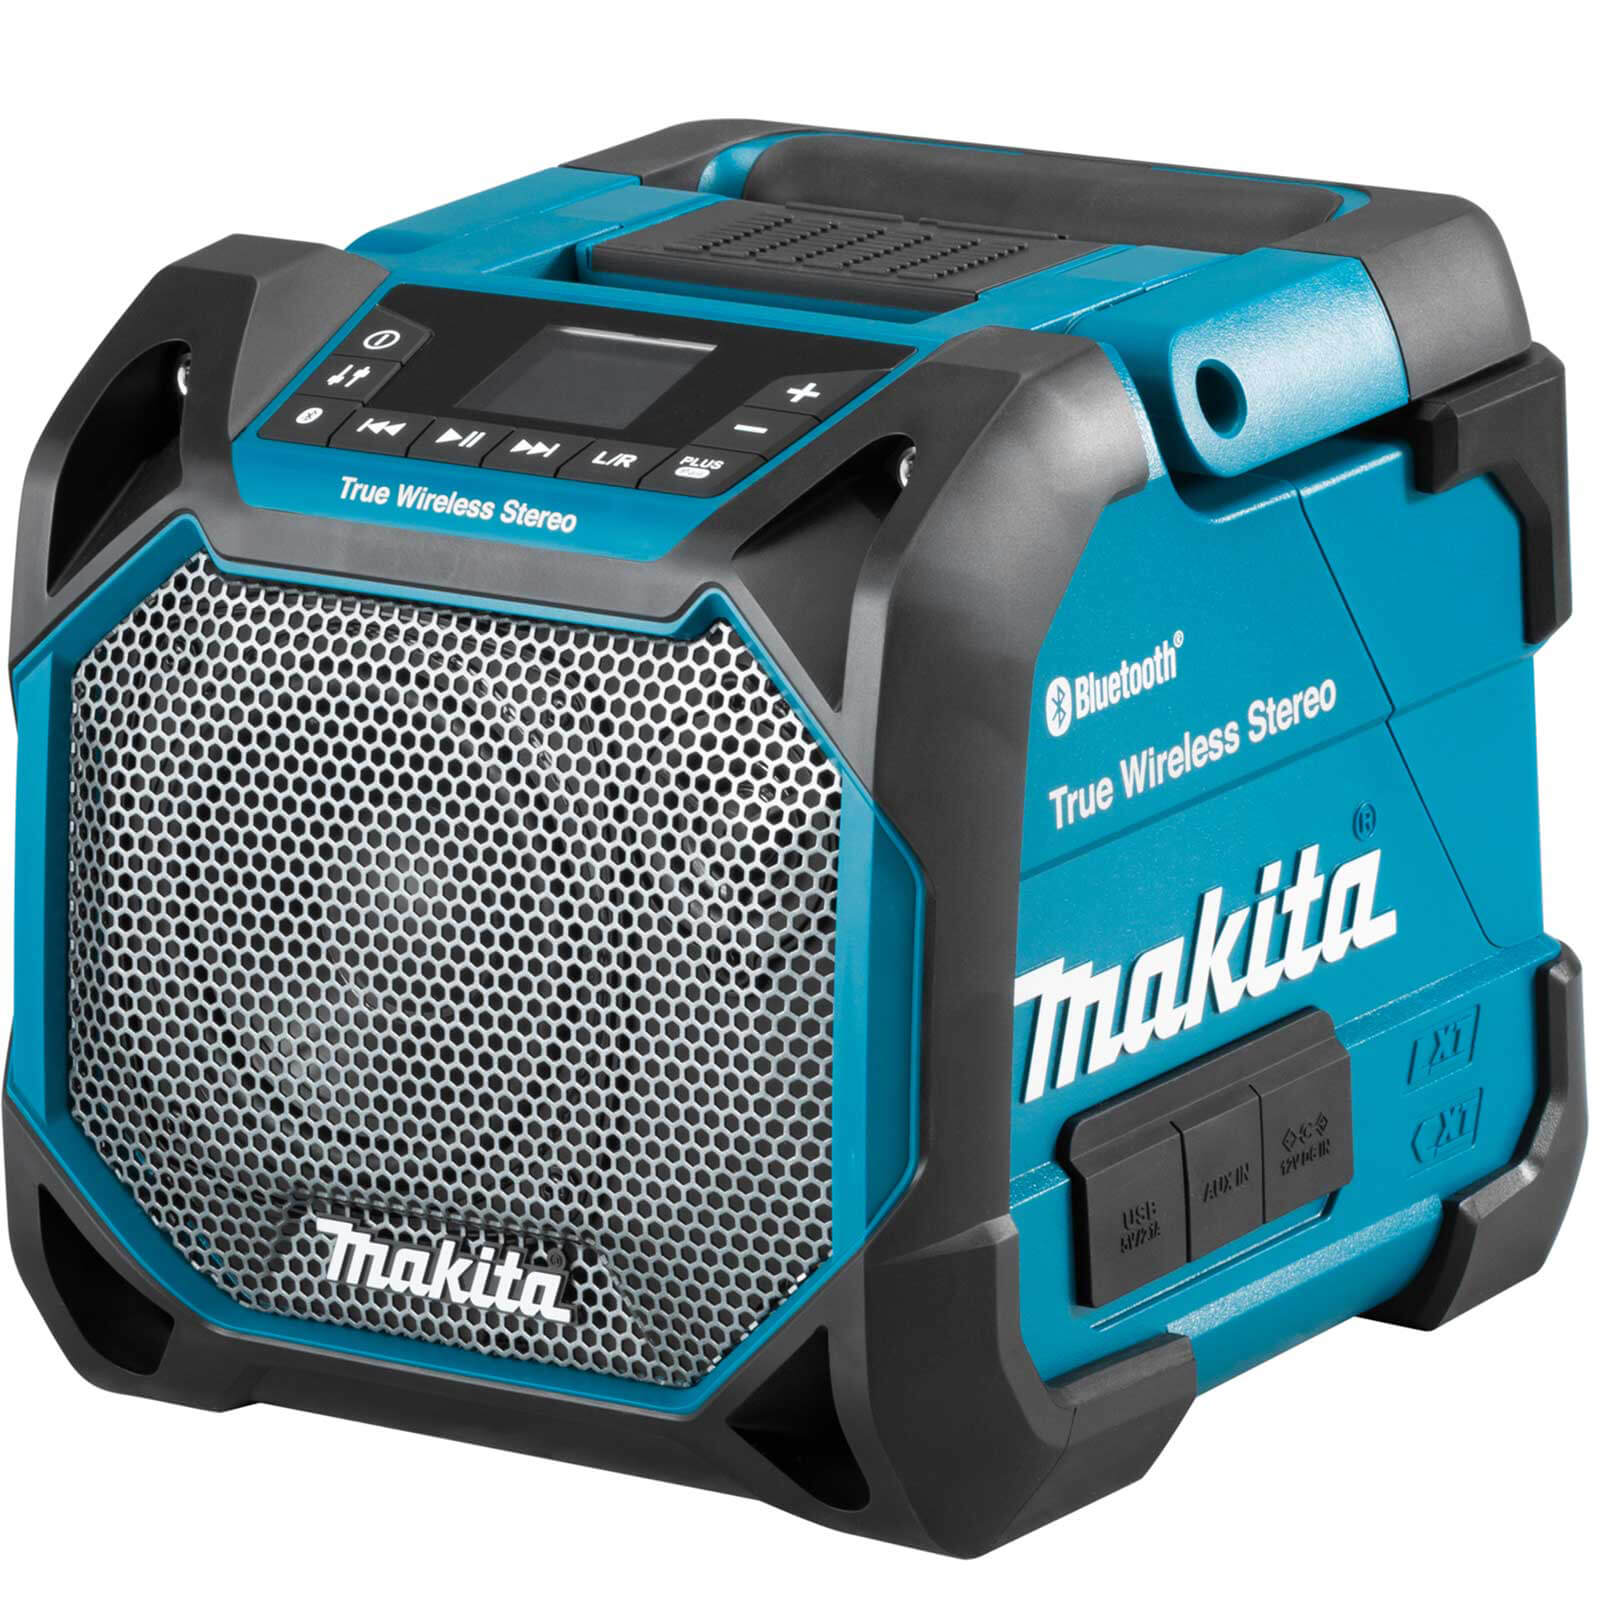 Image of Makita DMR203 18v Cordless Bluetooth Jobsite Speaker